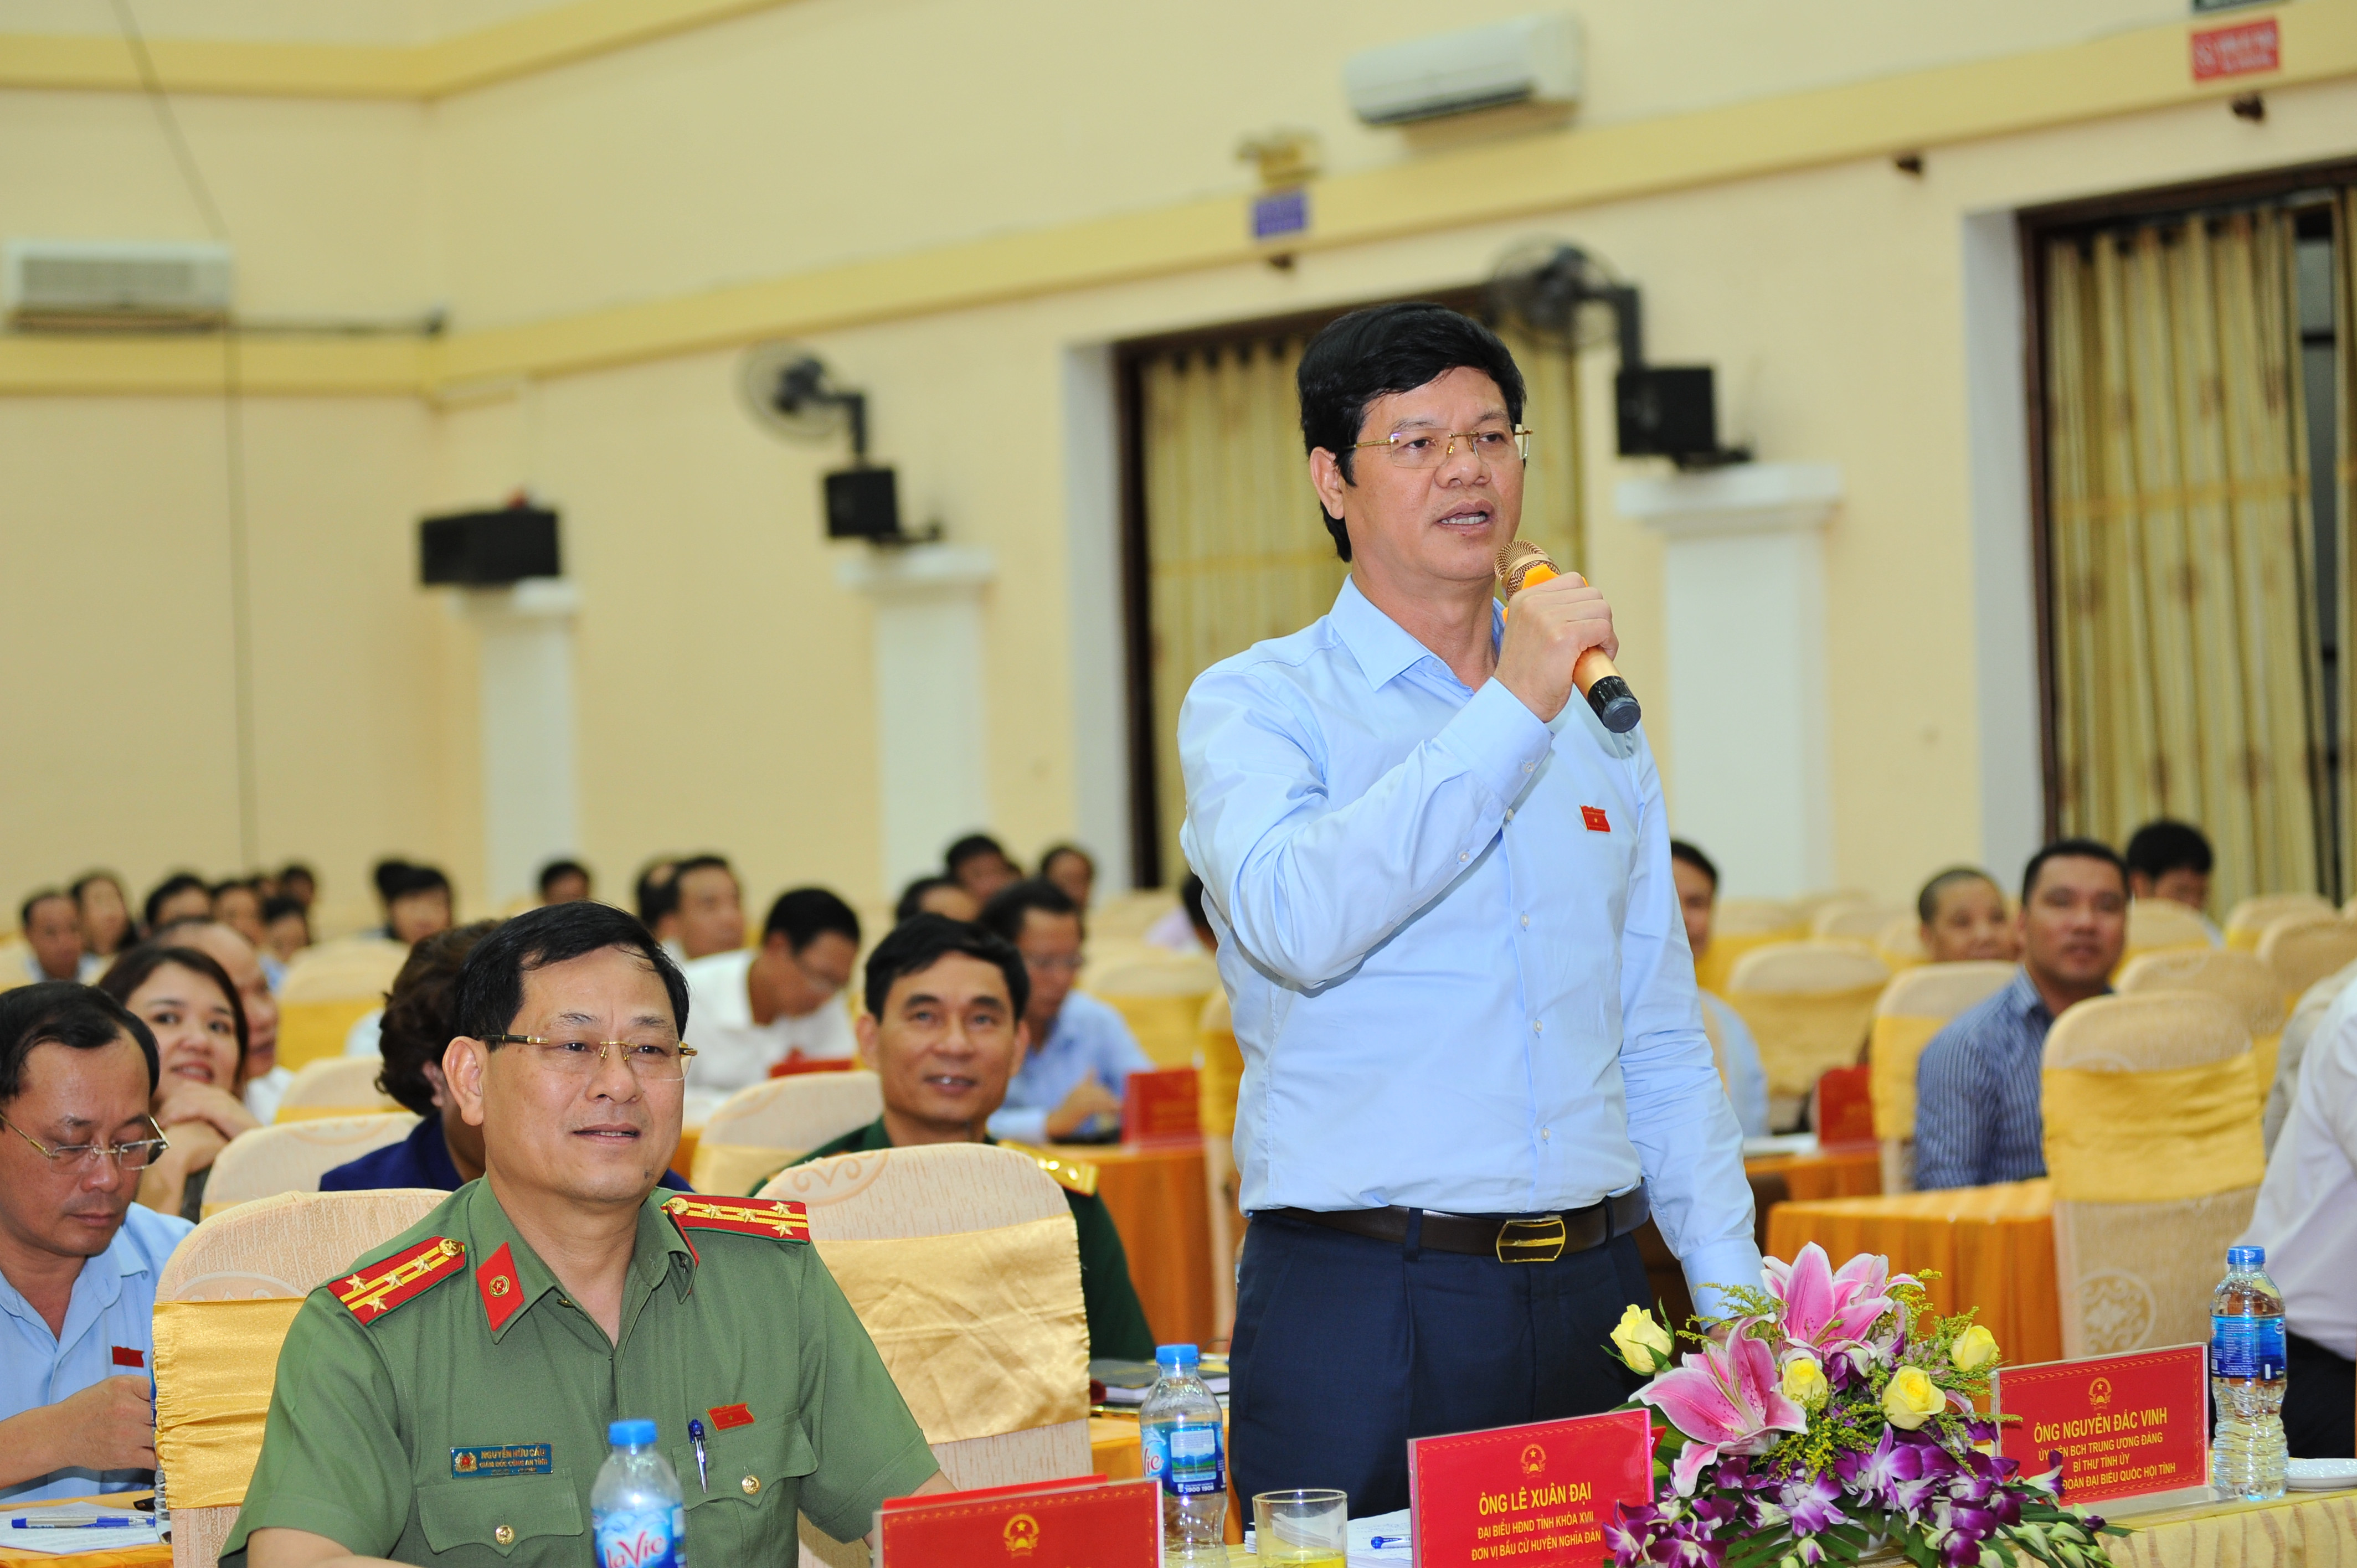 Phó Chủ tịch Thường trực UBND tỉnh Lê Xuân Đại đặt câu hỏi cho Giám đốc Sở KH&CN. Ảnh: Thành Cường